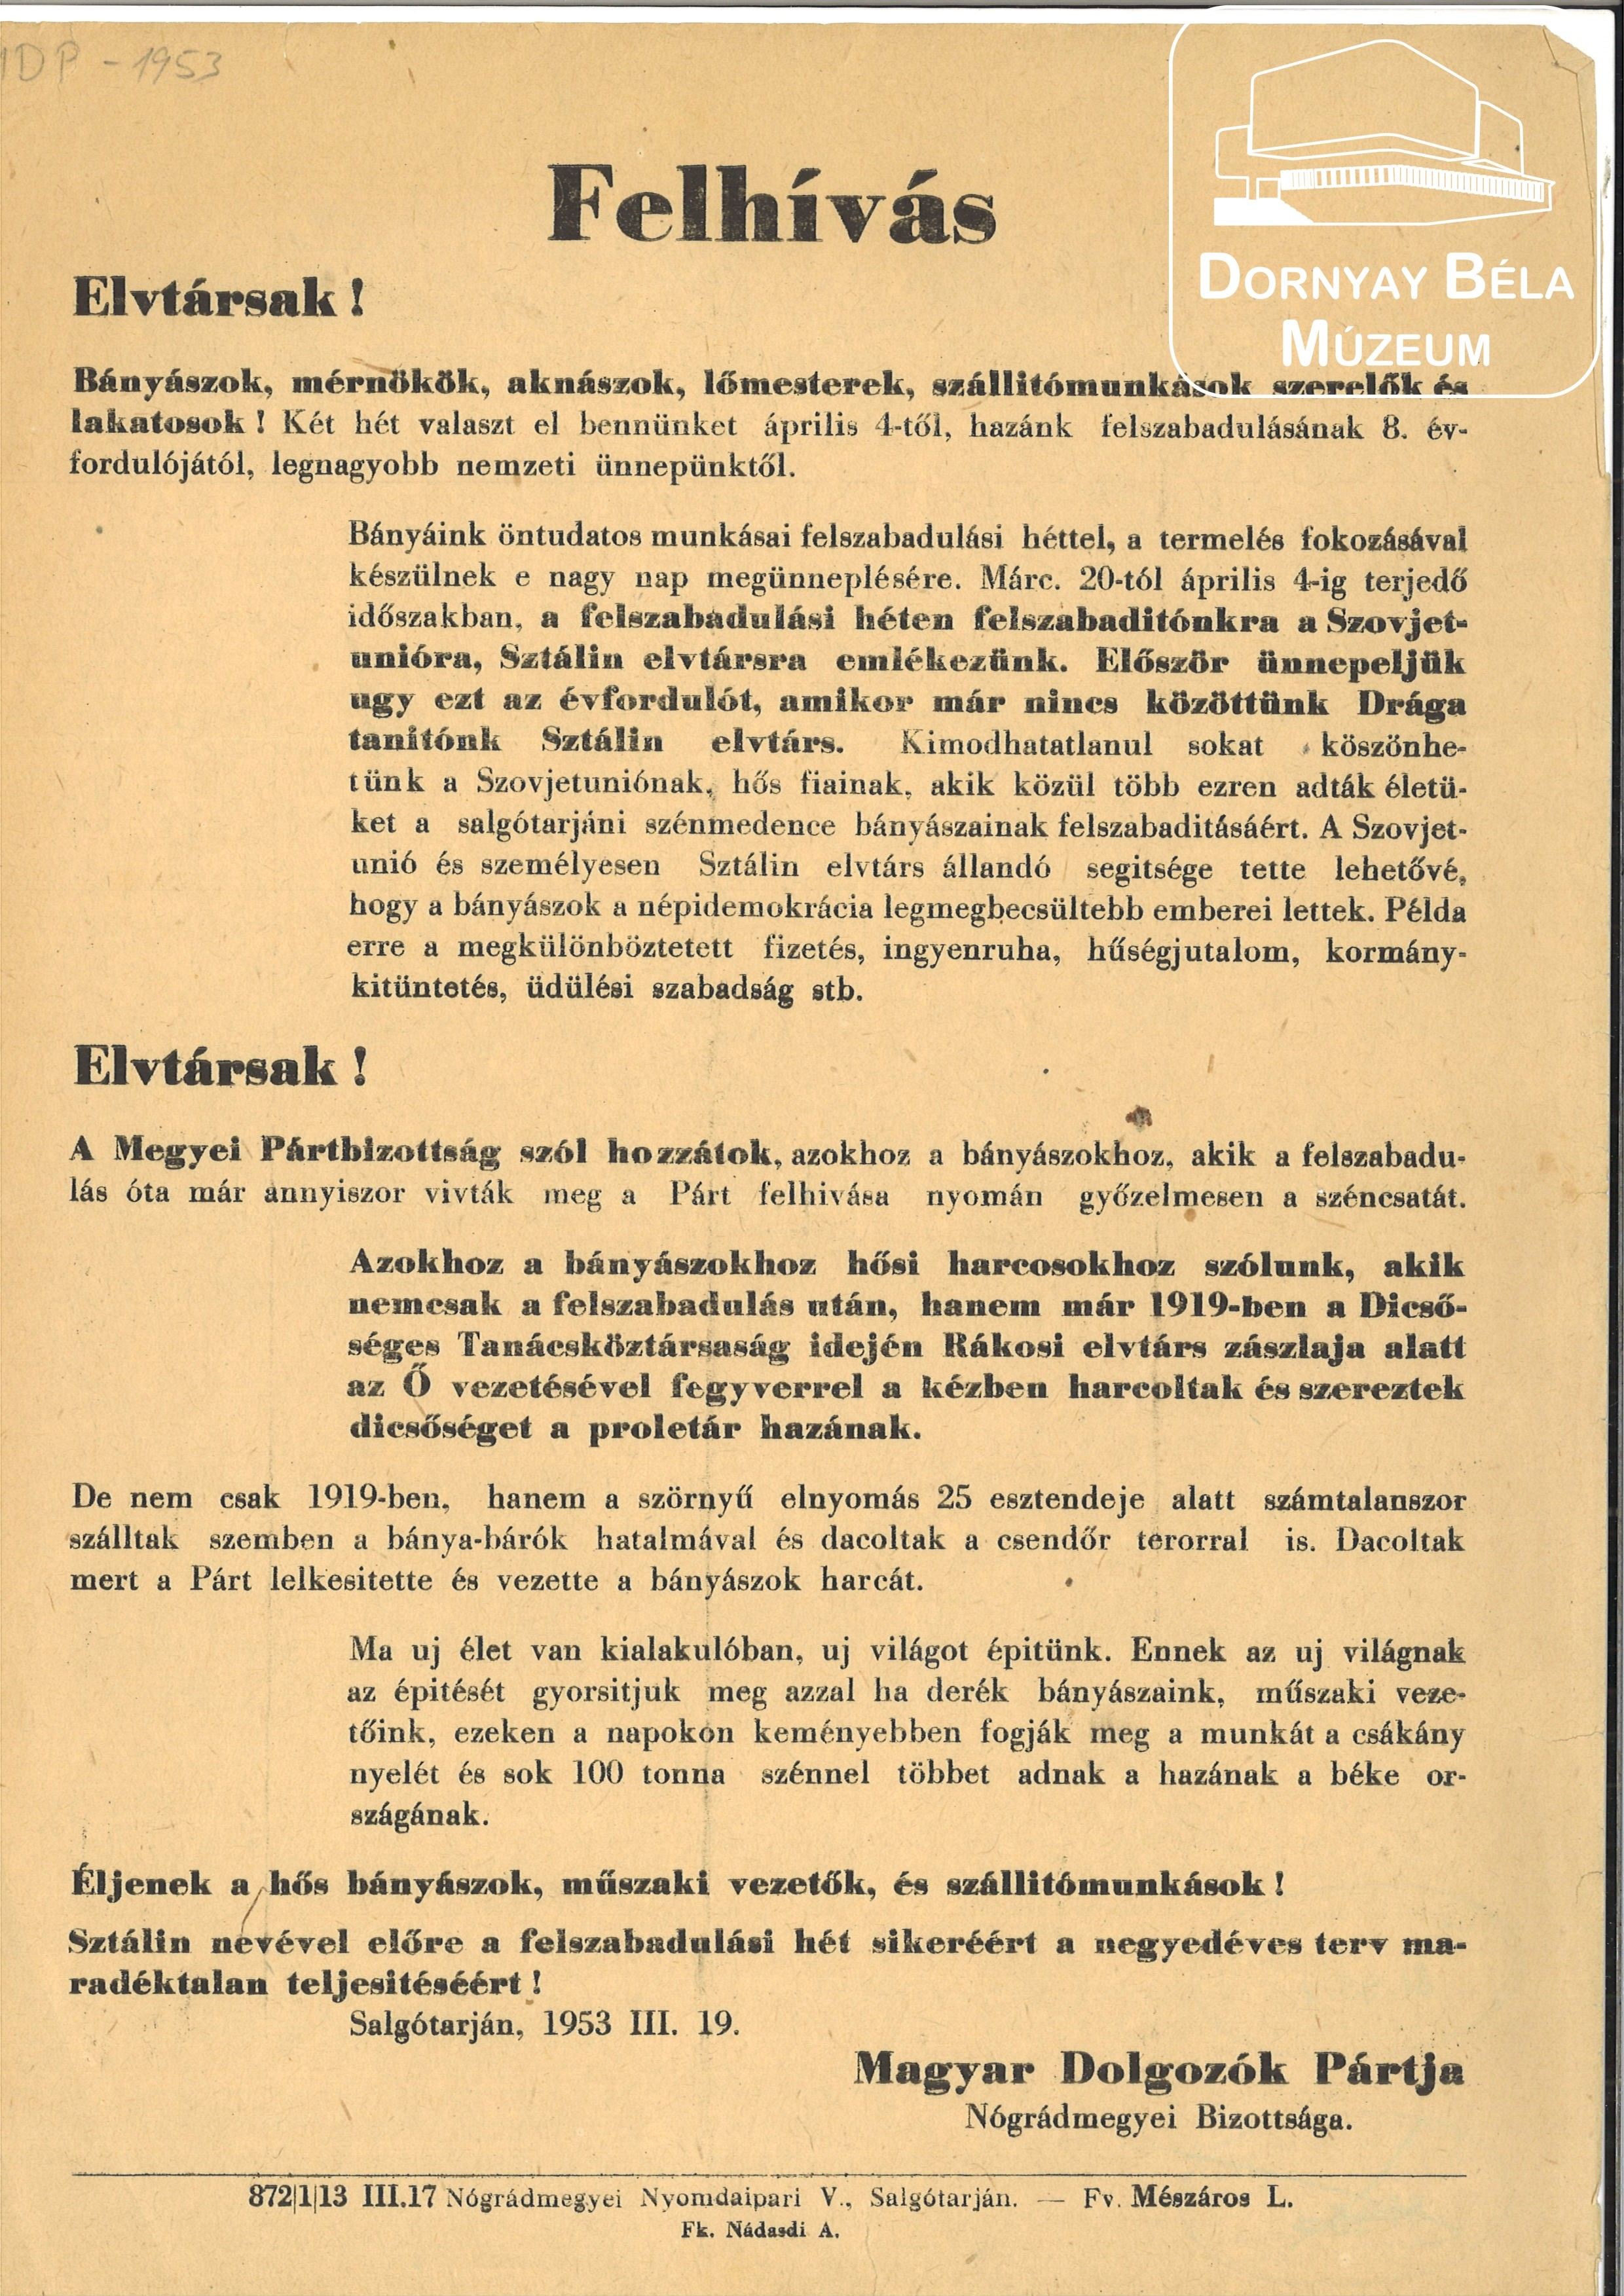 MDP felhívása a bányászokhoz (Megyei Pártbizottság) (Dornyay Béla Múzeum, Salgótarján CC BY-NC-SA)